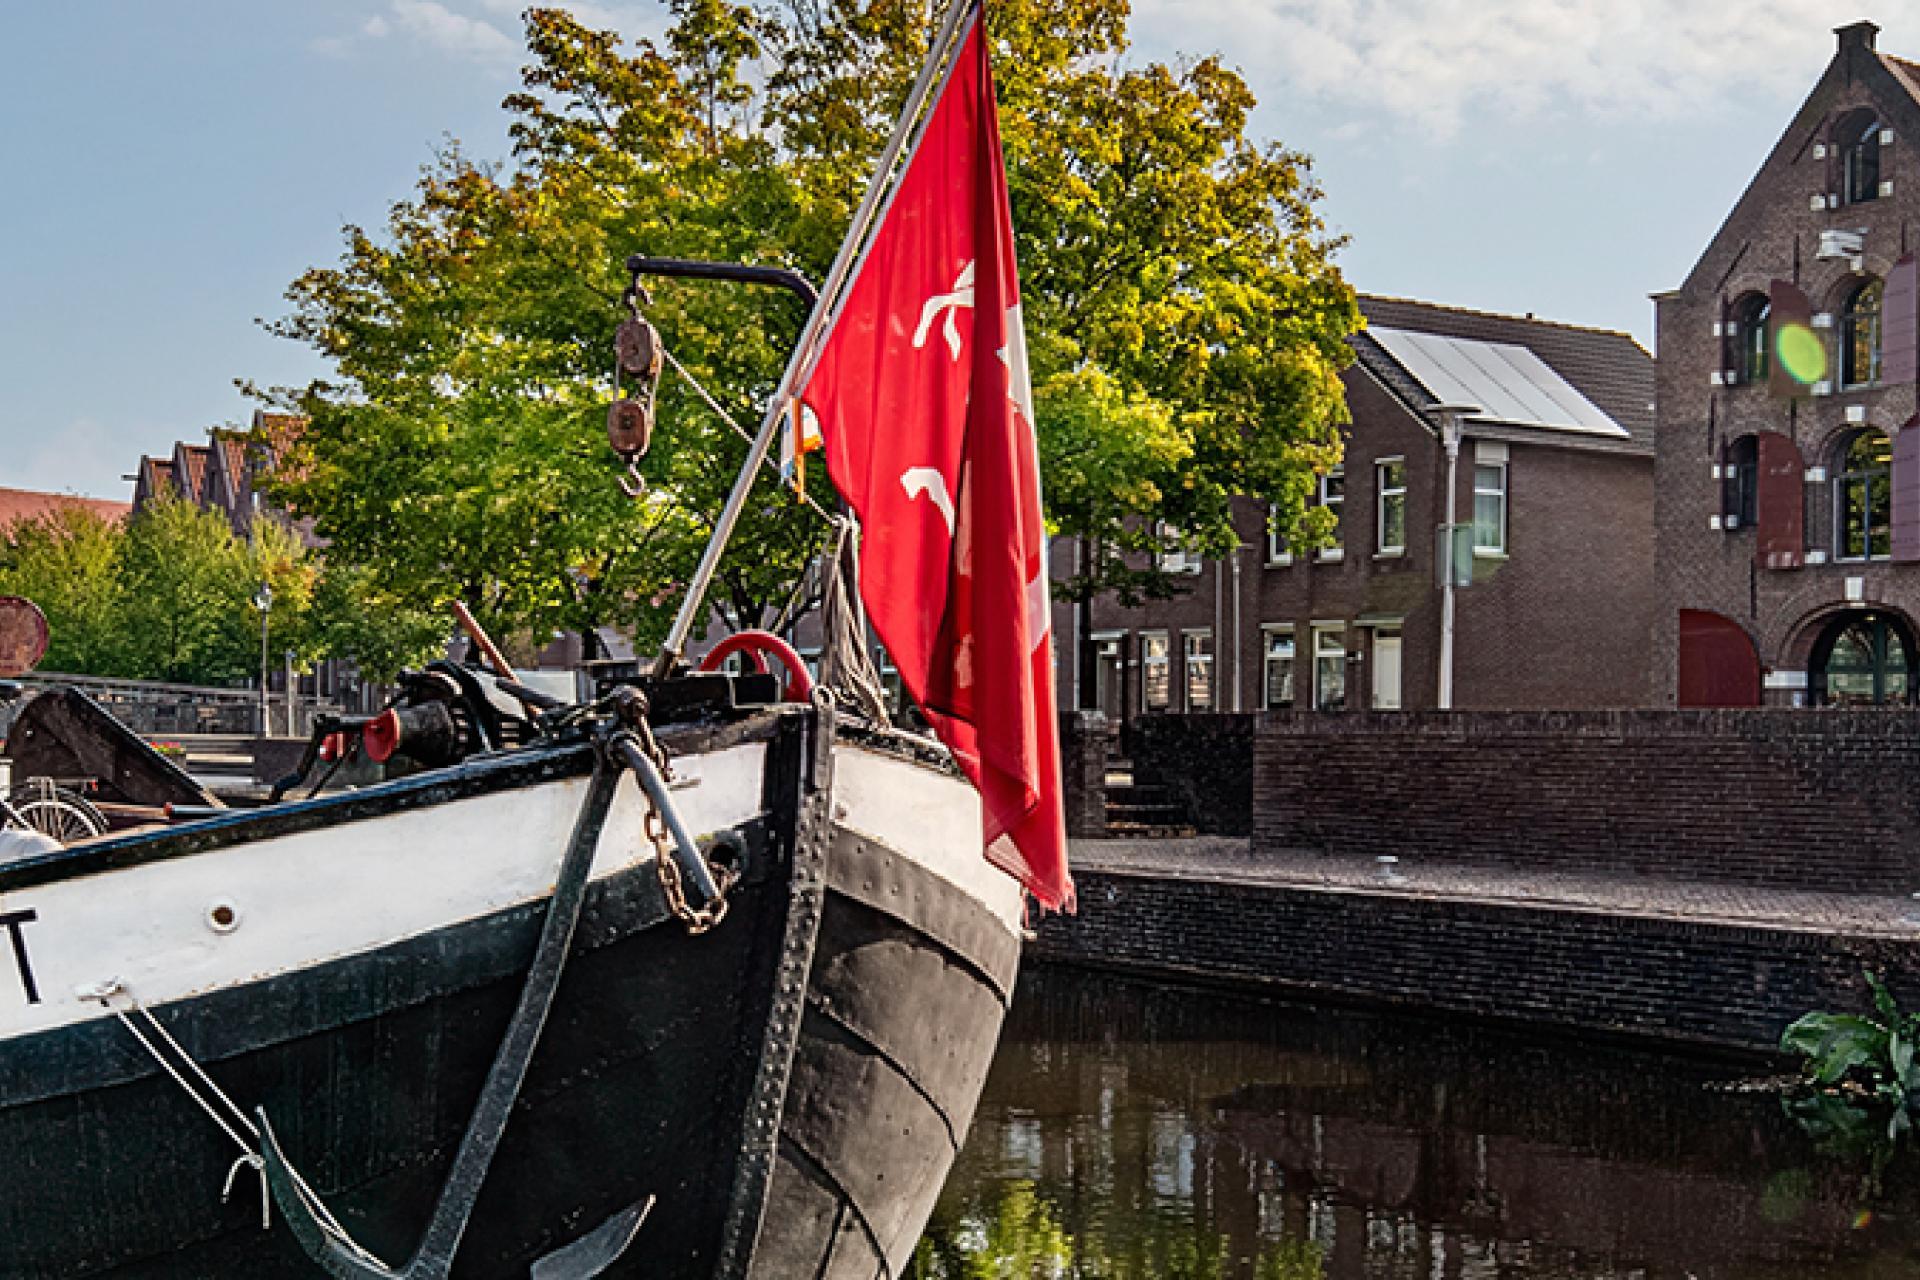 Op de voorgrond schip met rode vlag in haven, rechts 3 pakhuizen, nu stedelijk museum. Links voetpad langs het water. Op de achtergrond groene bomen en blauwe lucht.